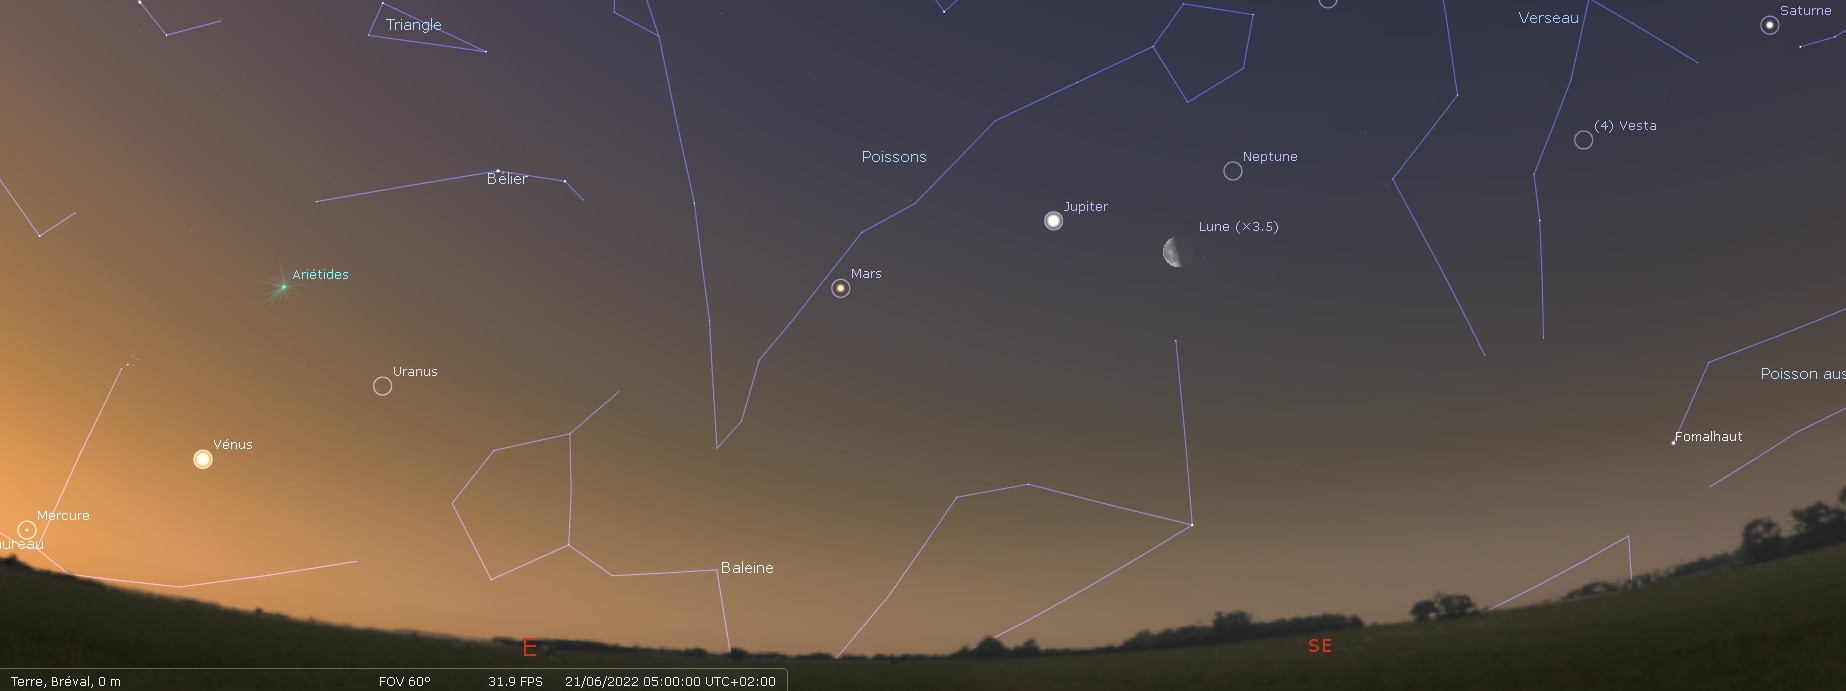 Observez Mercure, Vénus, Mars, Jupiter, et Saturne alignées dans le plan de l'écliptique